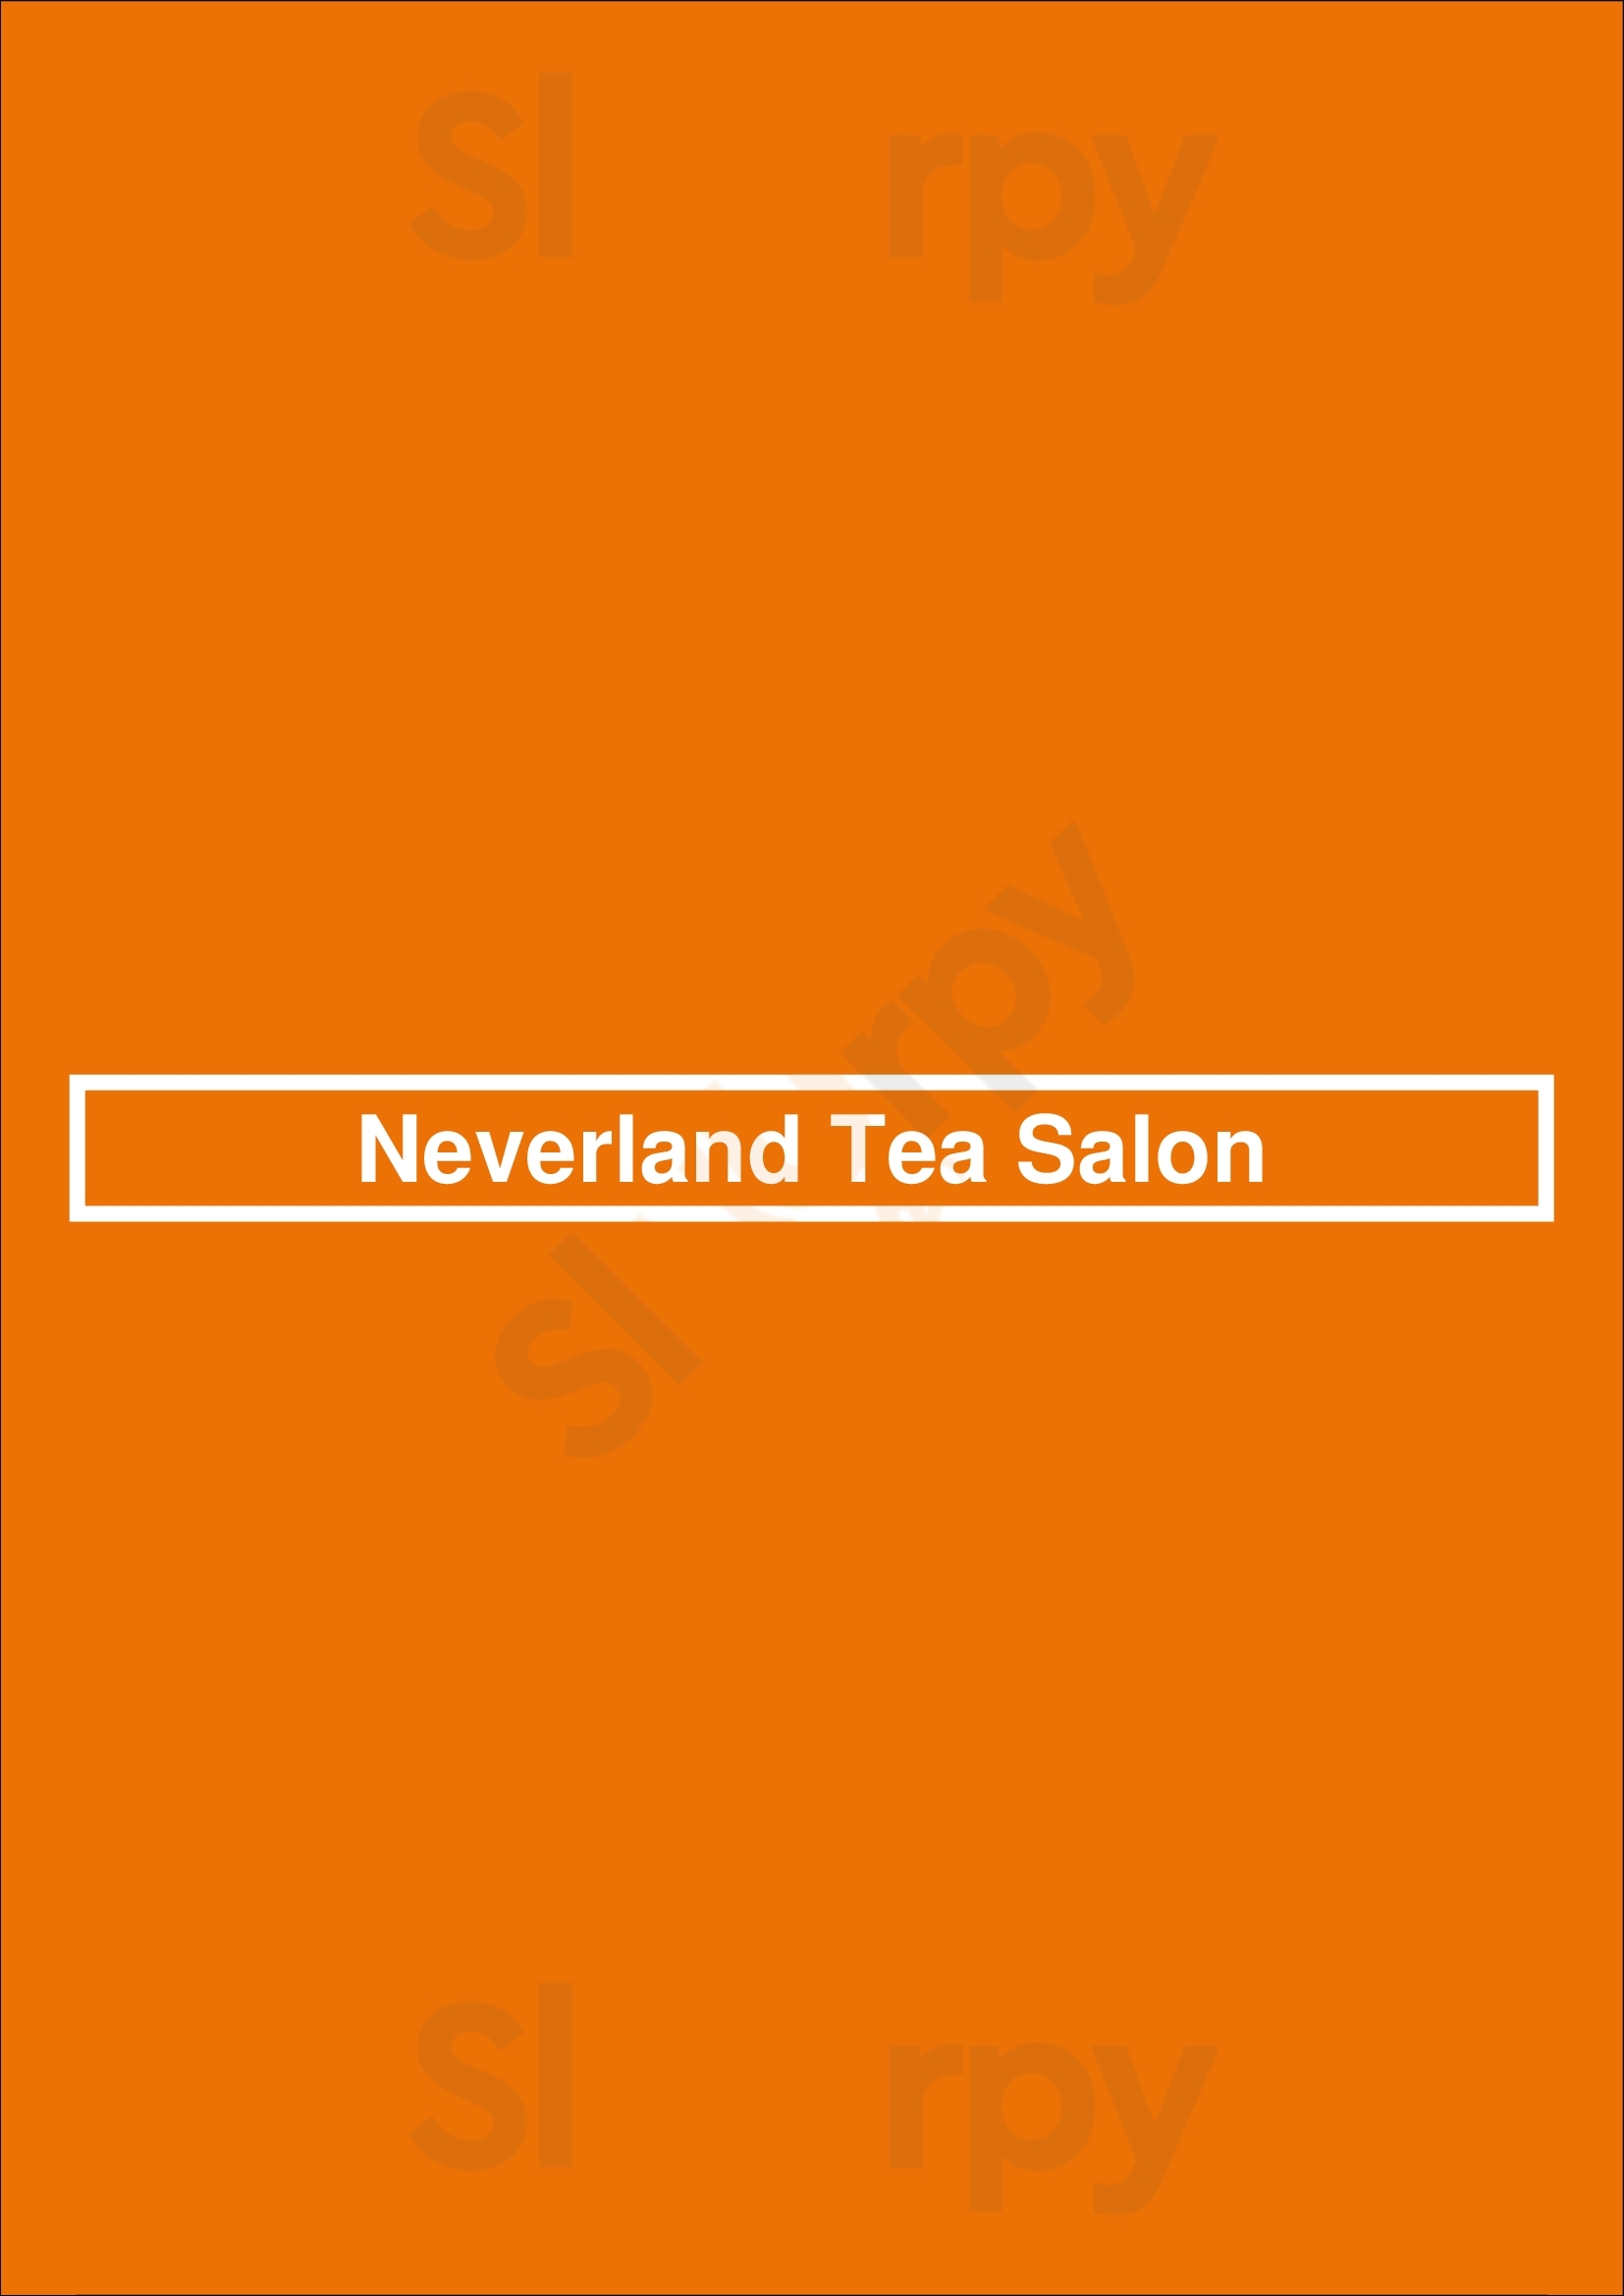 Neverland Tea Salon Vancouver Menu - 1